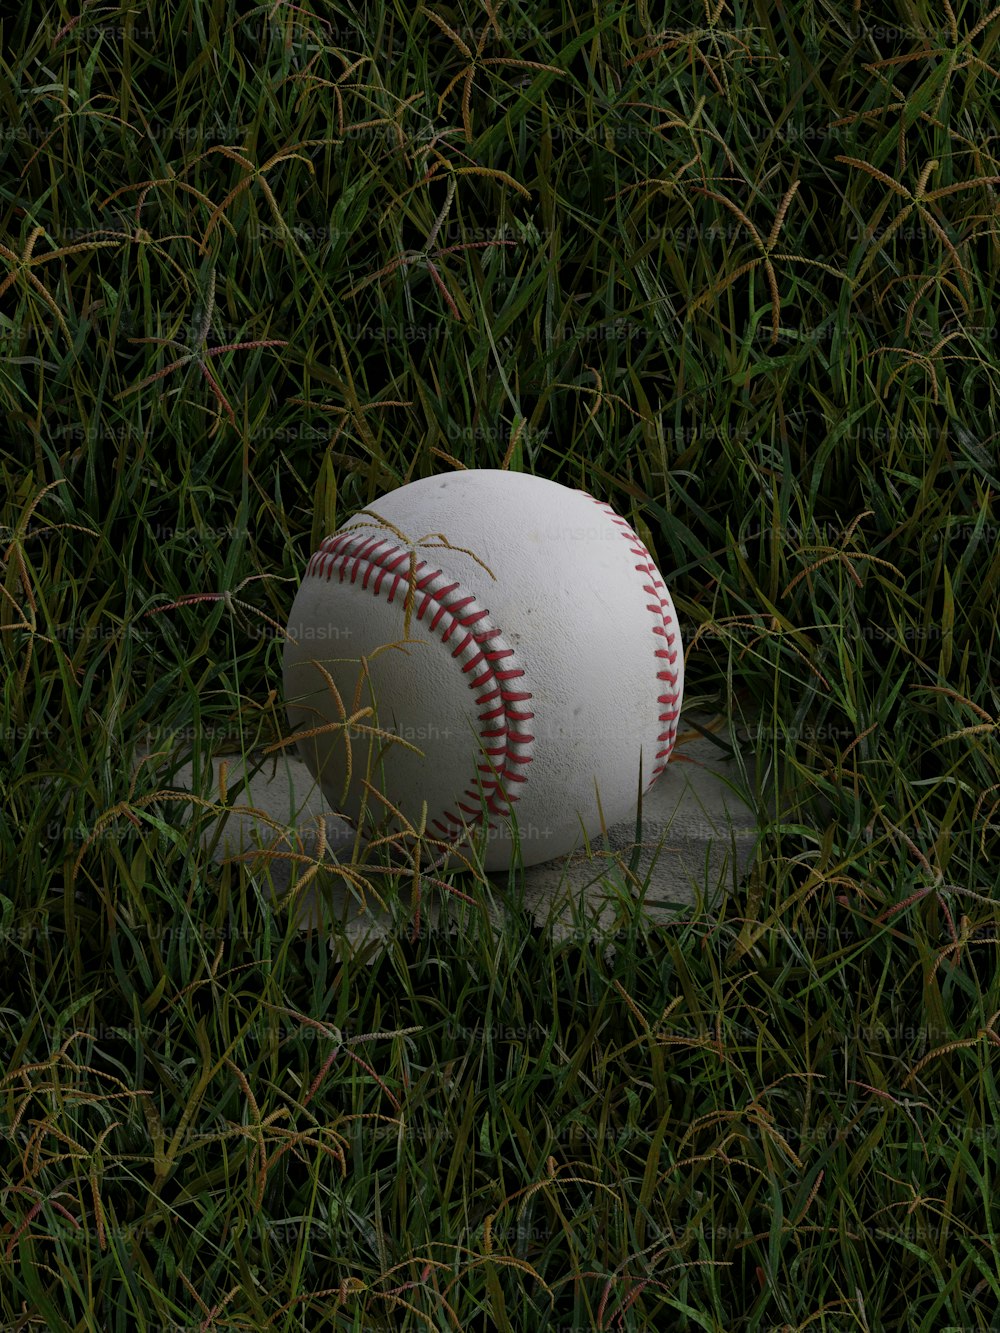 잔디밭에 야구공 위에 놓인 야구공